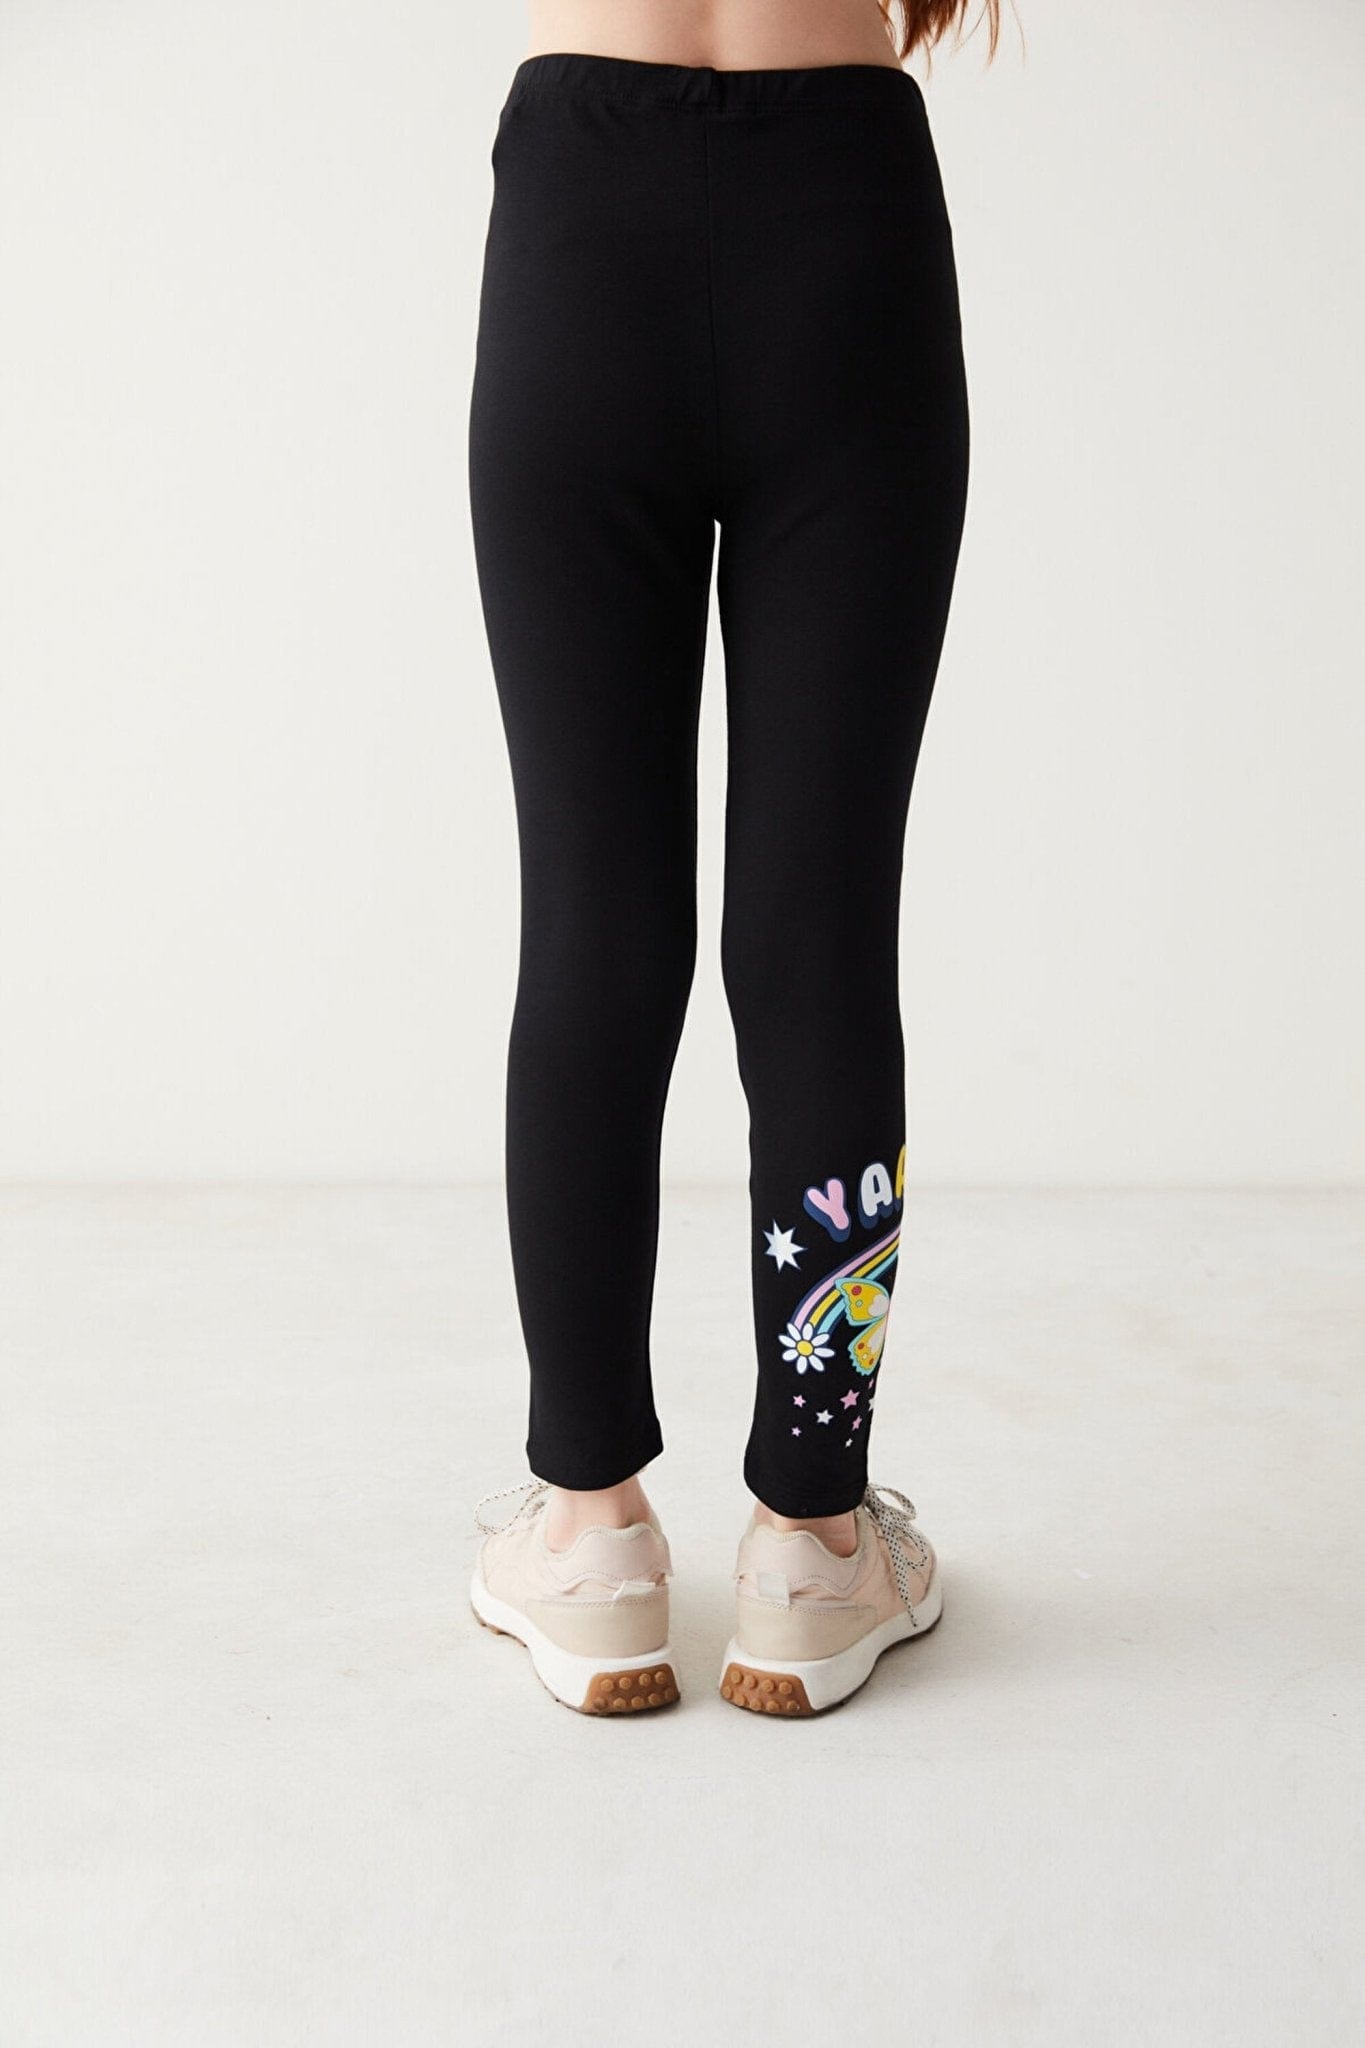 Black Girl's Rainbow Patterned Leggings FLEXISB